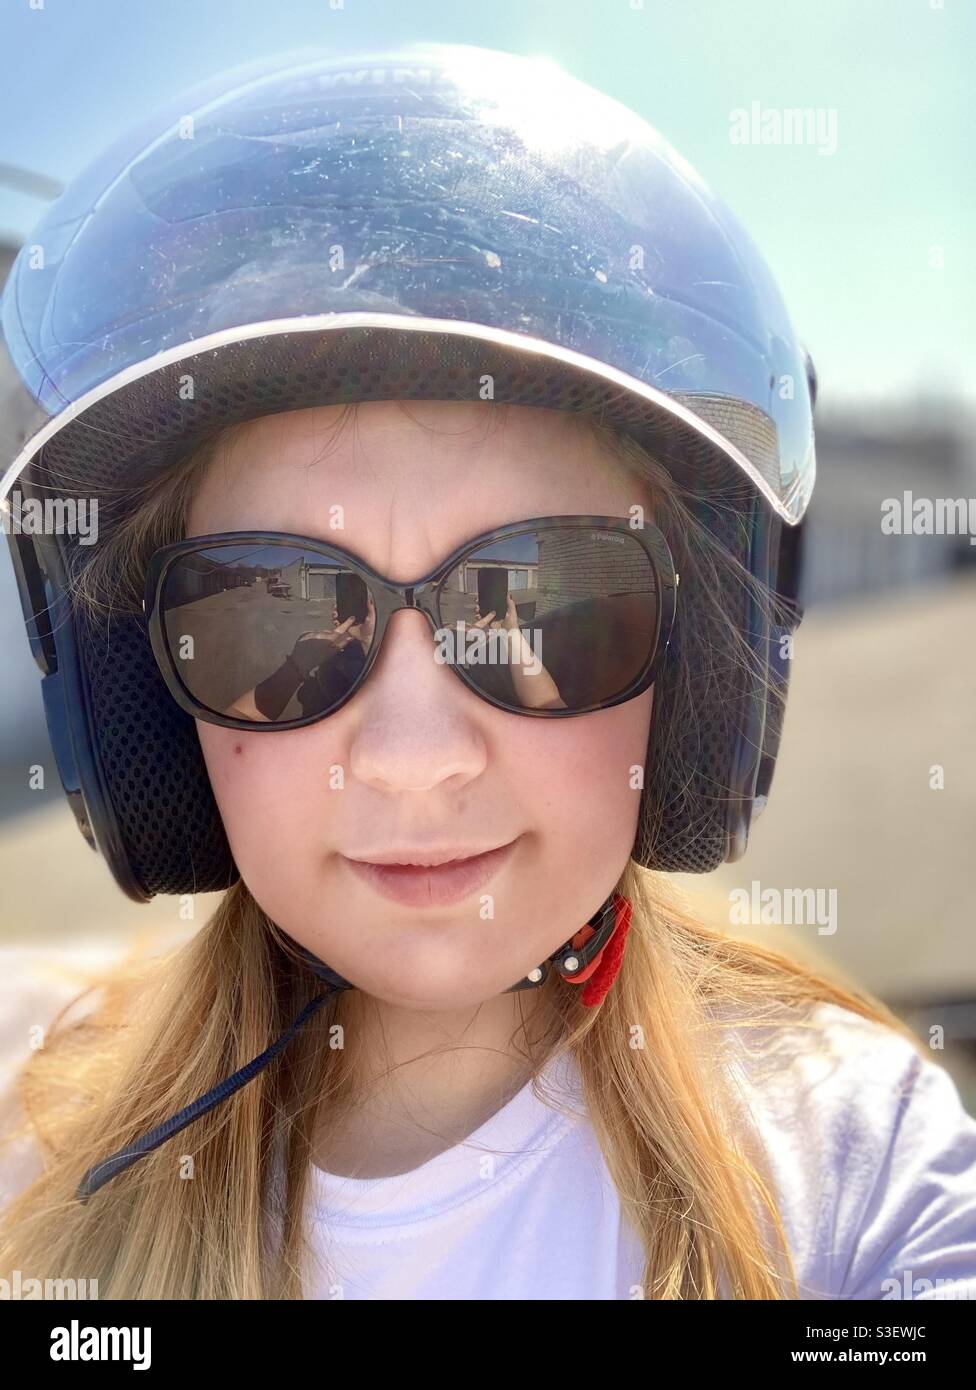 Une femme en casque de moto et lunettes de soleil Photo Stock - Alamy